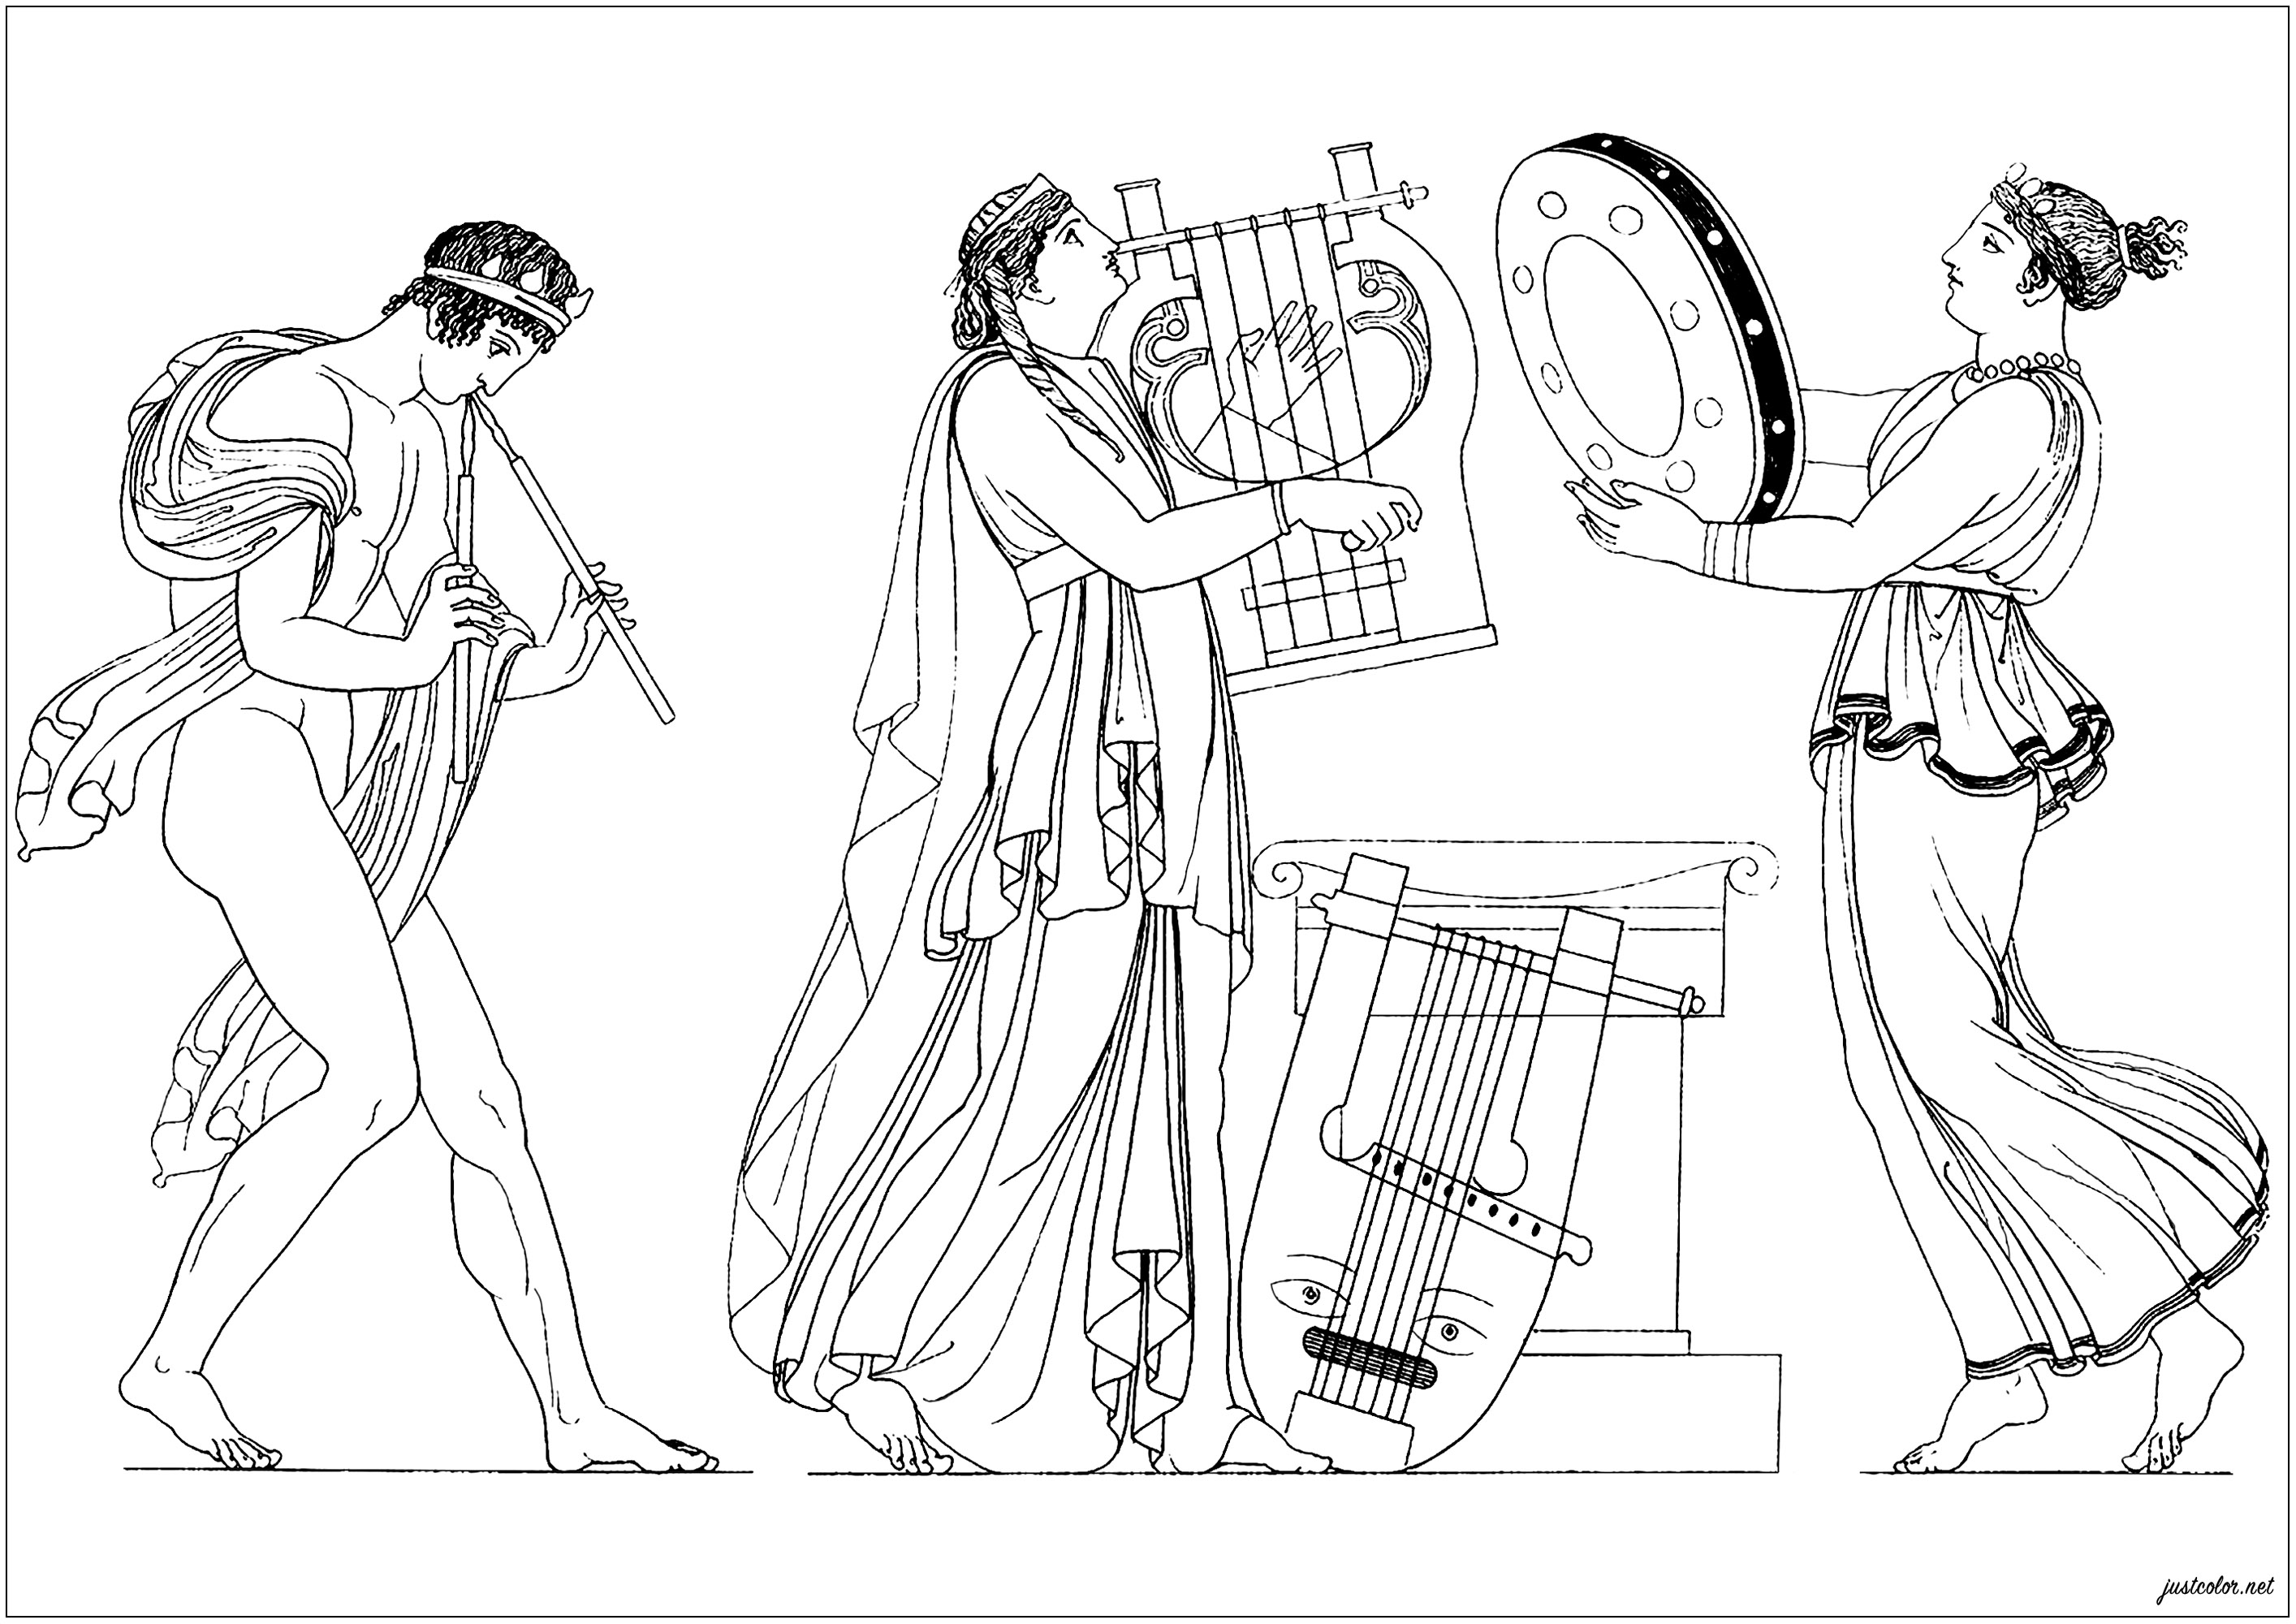 Músicos de la antigua Grecia. Página para colorear basada en una ilustración de 'Los trajes egipcios, griegos y romanos' de Thomas Baxter (1782-1821)